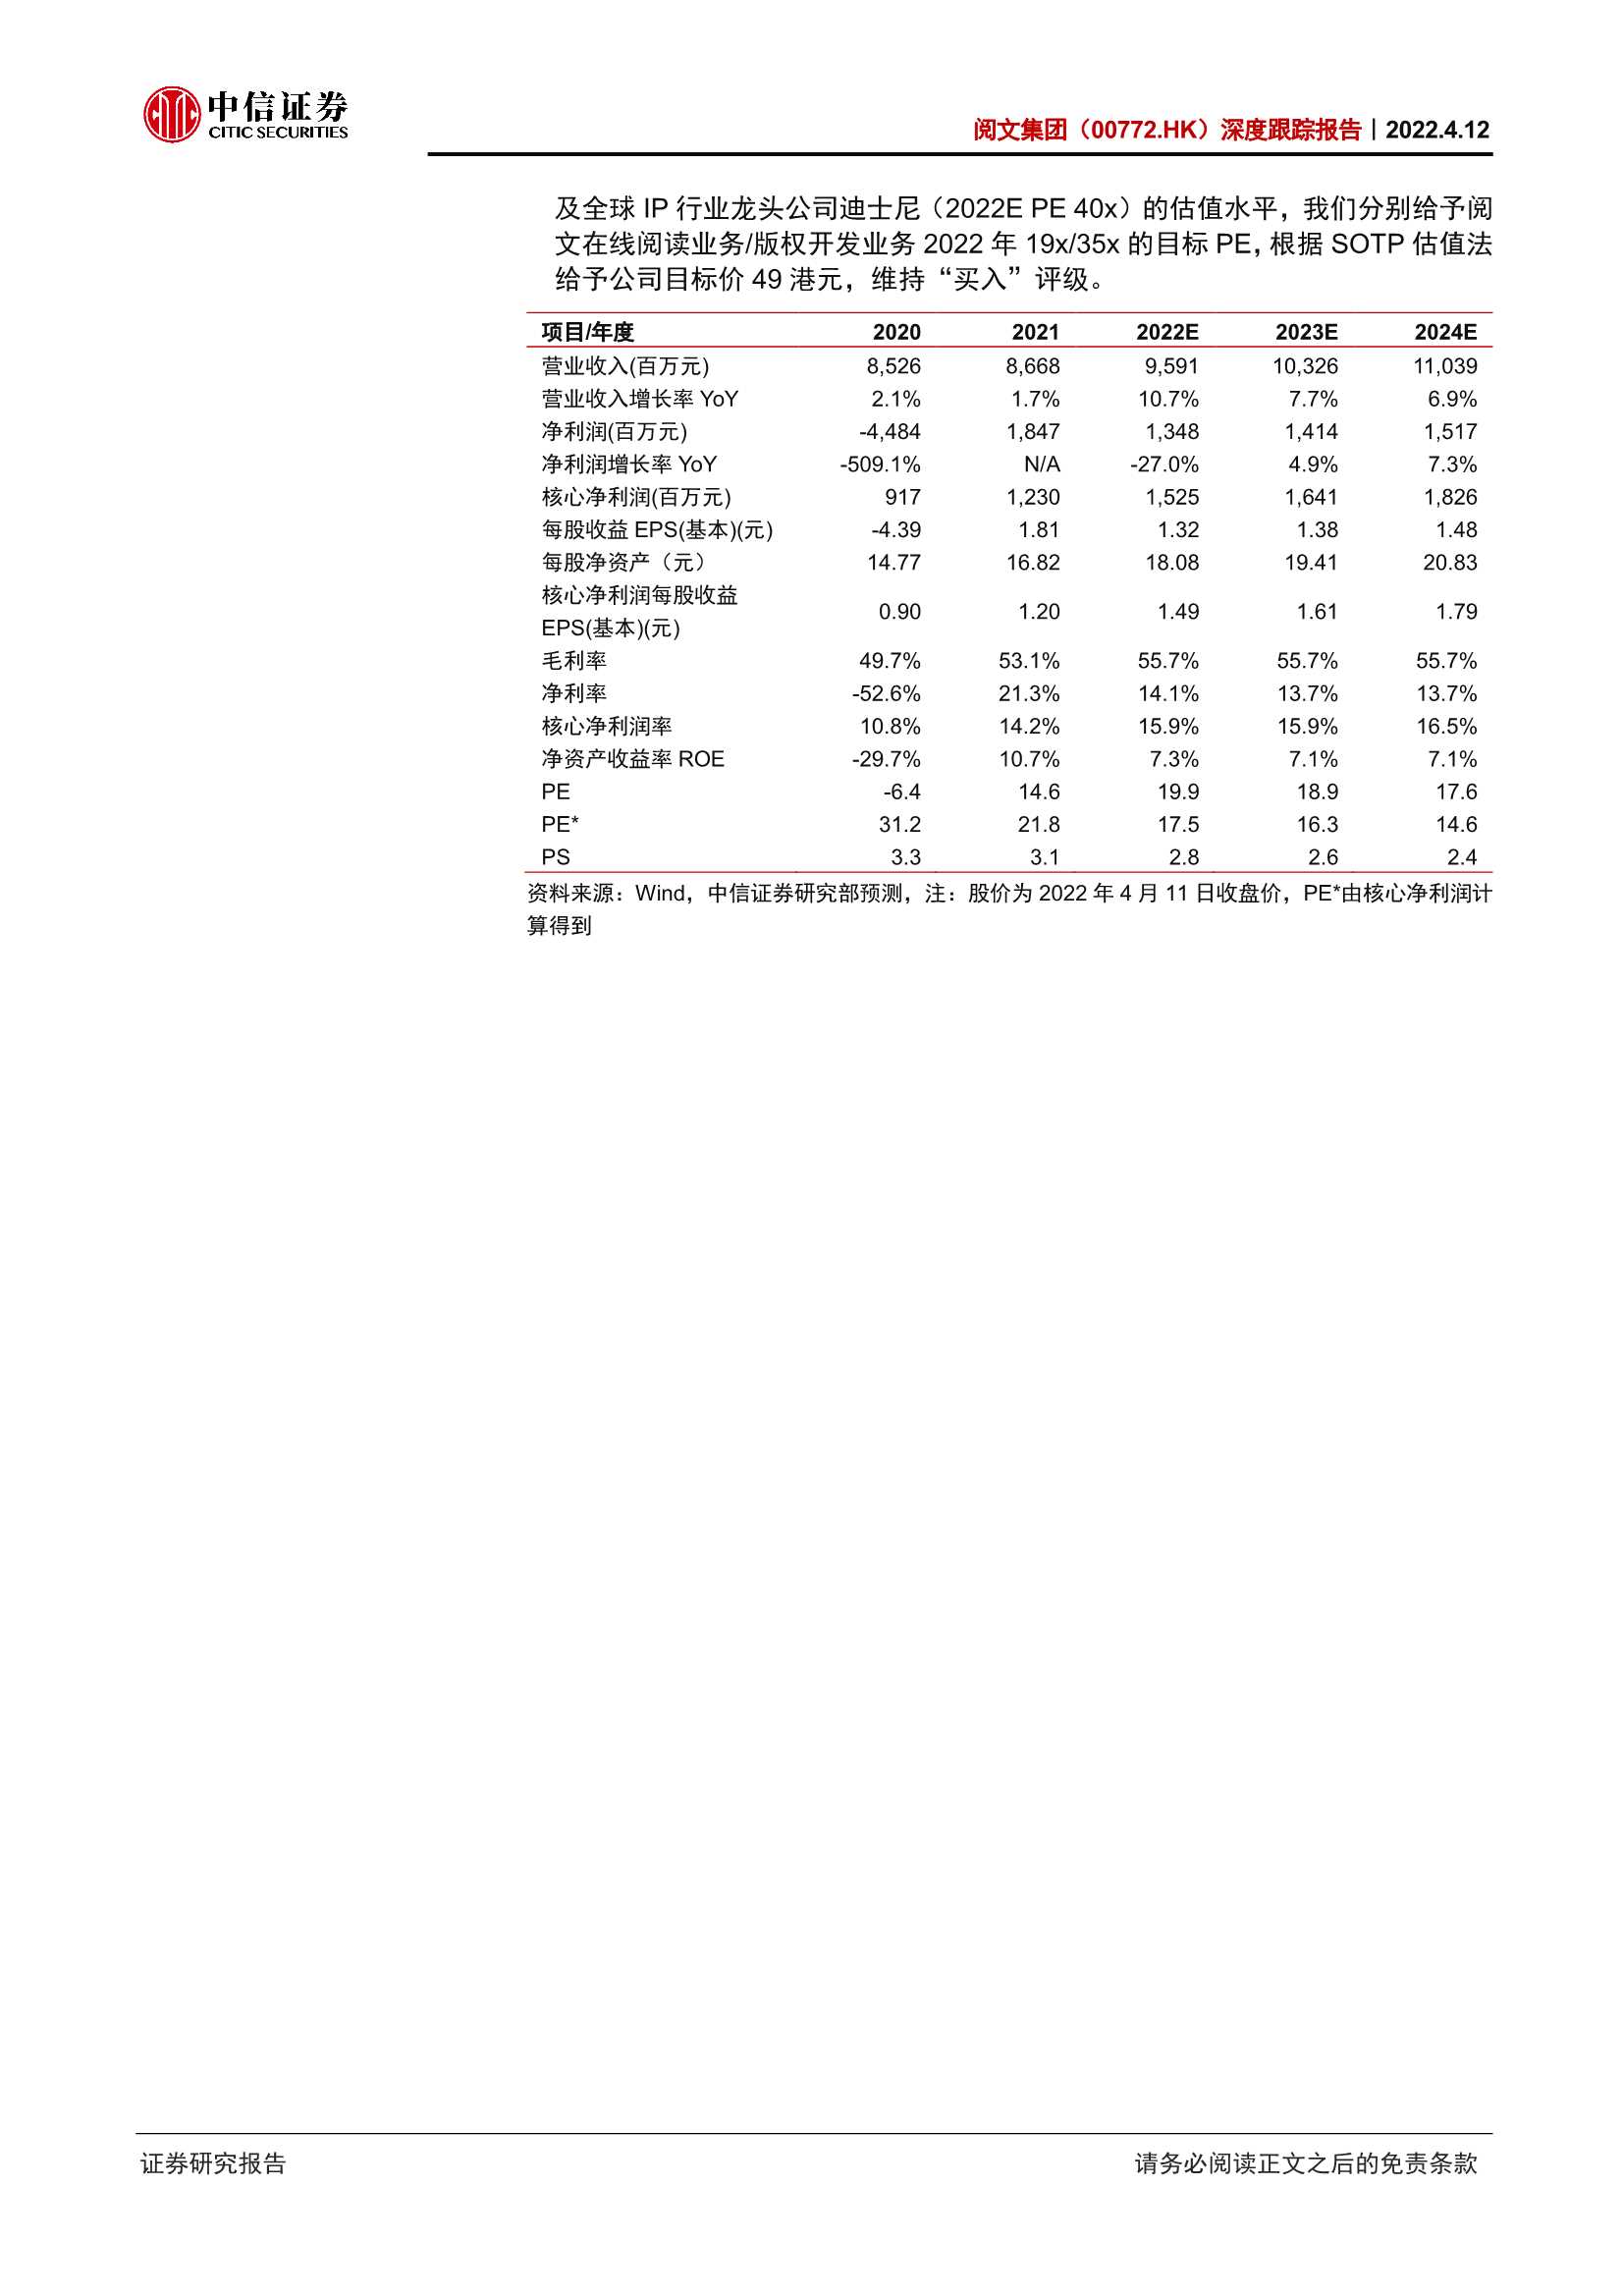 阅文集团-0772.HK-深度跟踪报告：关于阅文当前投资价值的三点思考-20220412-中信证券-40页